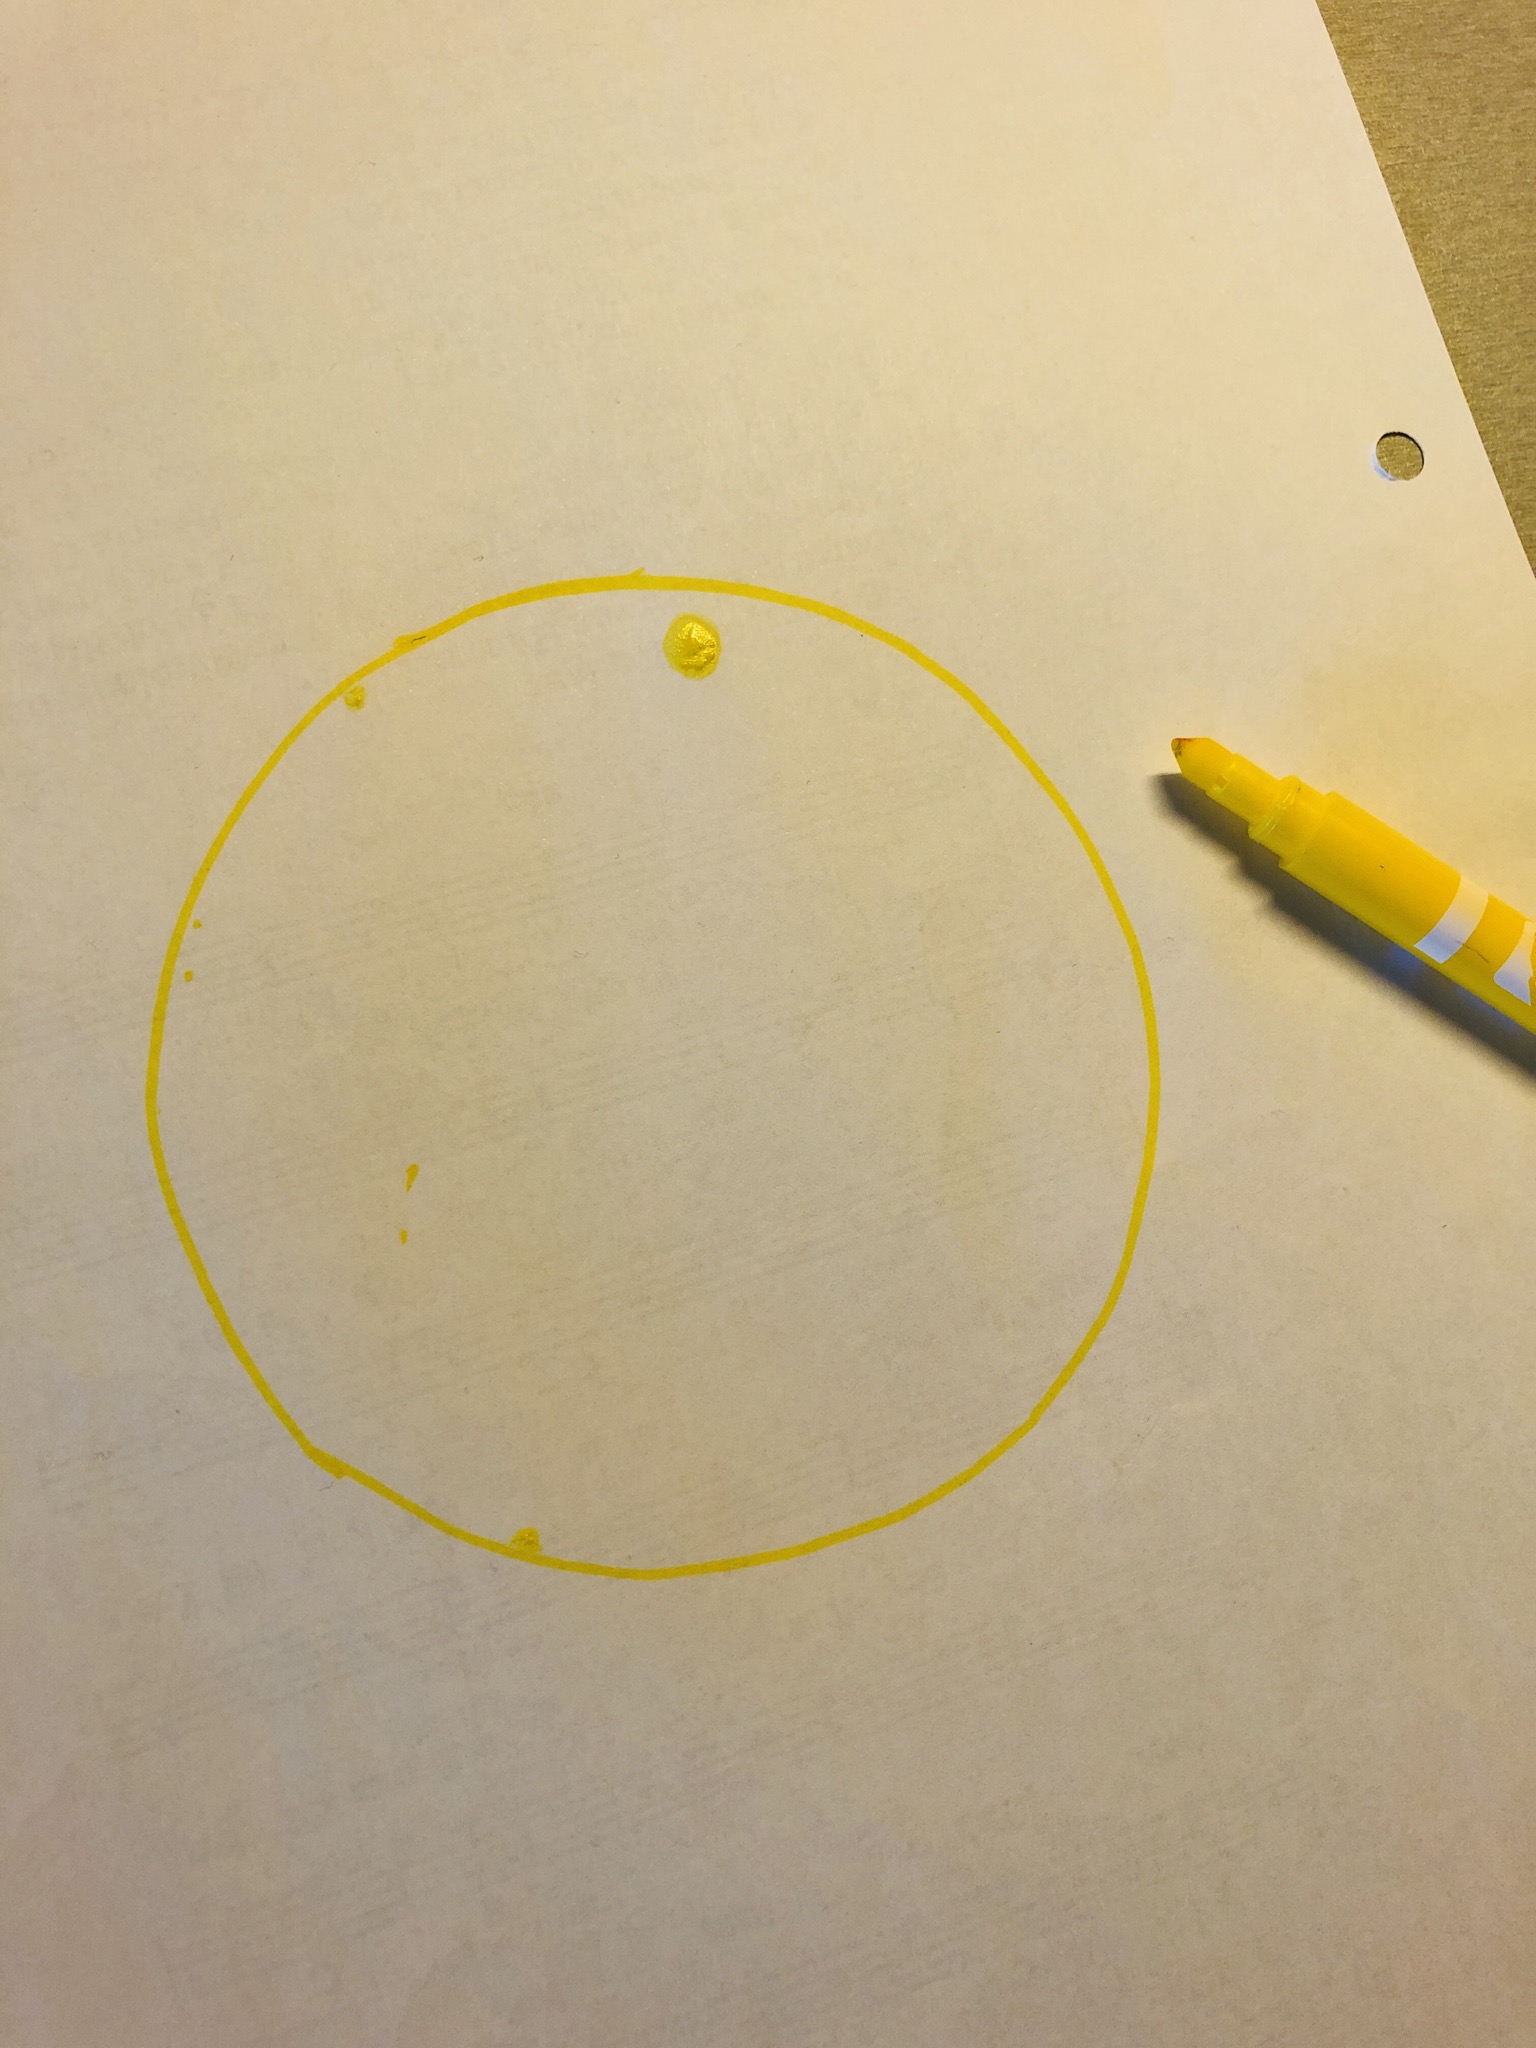 2. Bild zum Schritt 4 für die Kinder-Beschäftigung: 'Übertragt euren Kreis mit einem gelben Stift auf das weiße...'